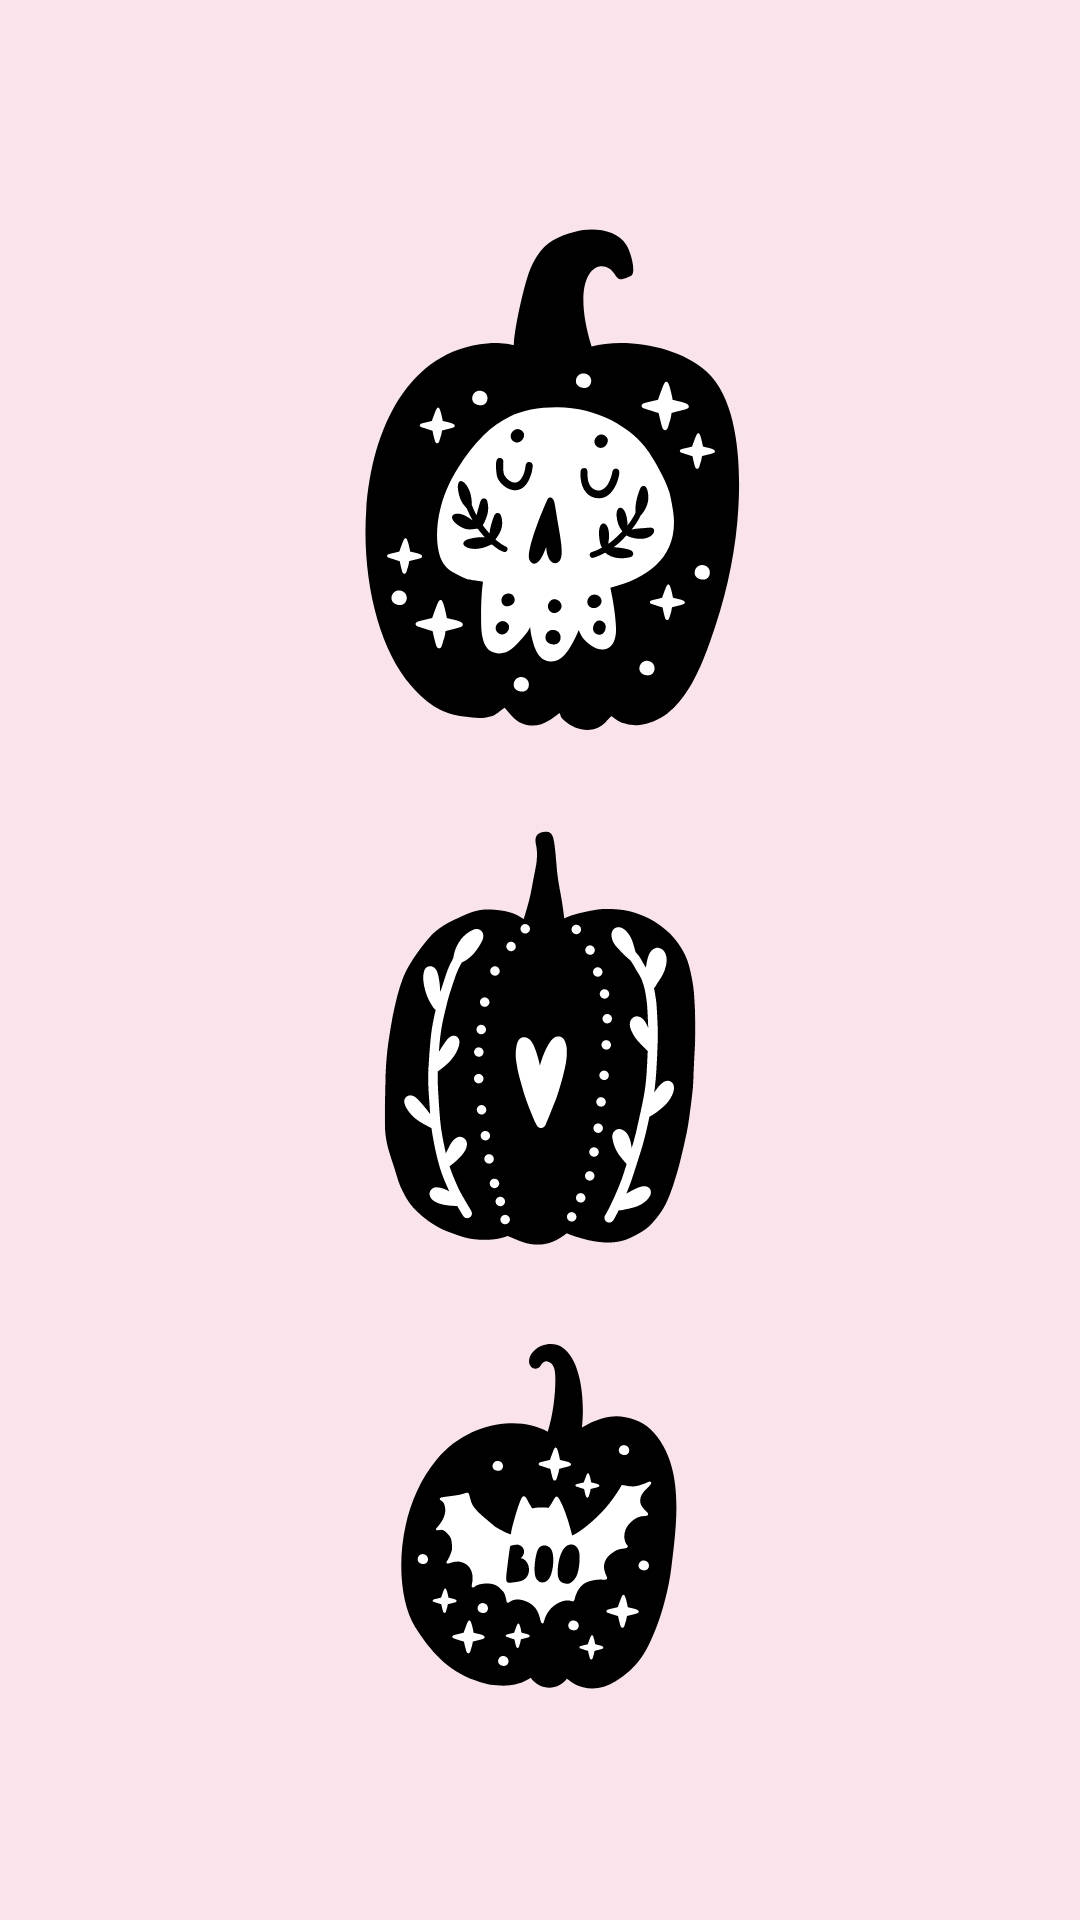 Enbedårande Mobiltelefon Med Halloween-tema, Perfekt För Den Läskiga Säsongen! Wallpaper